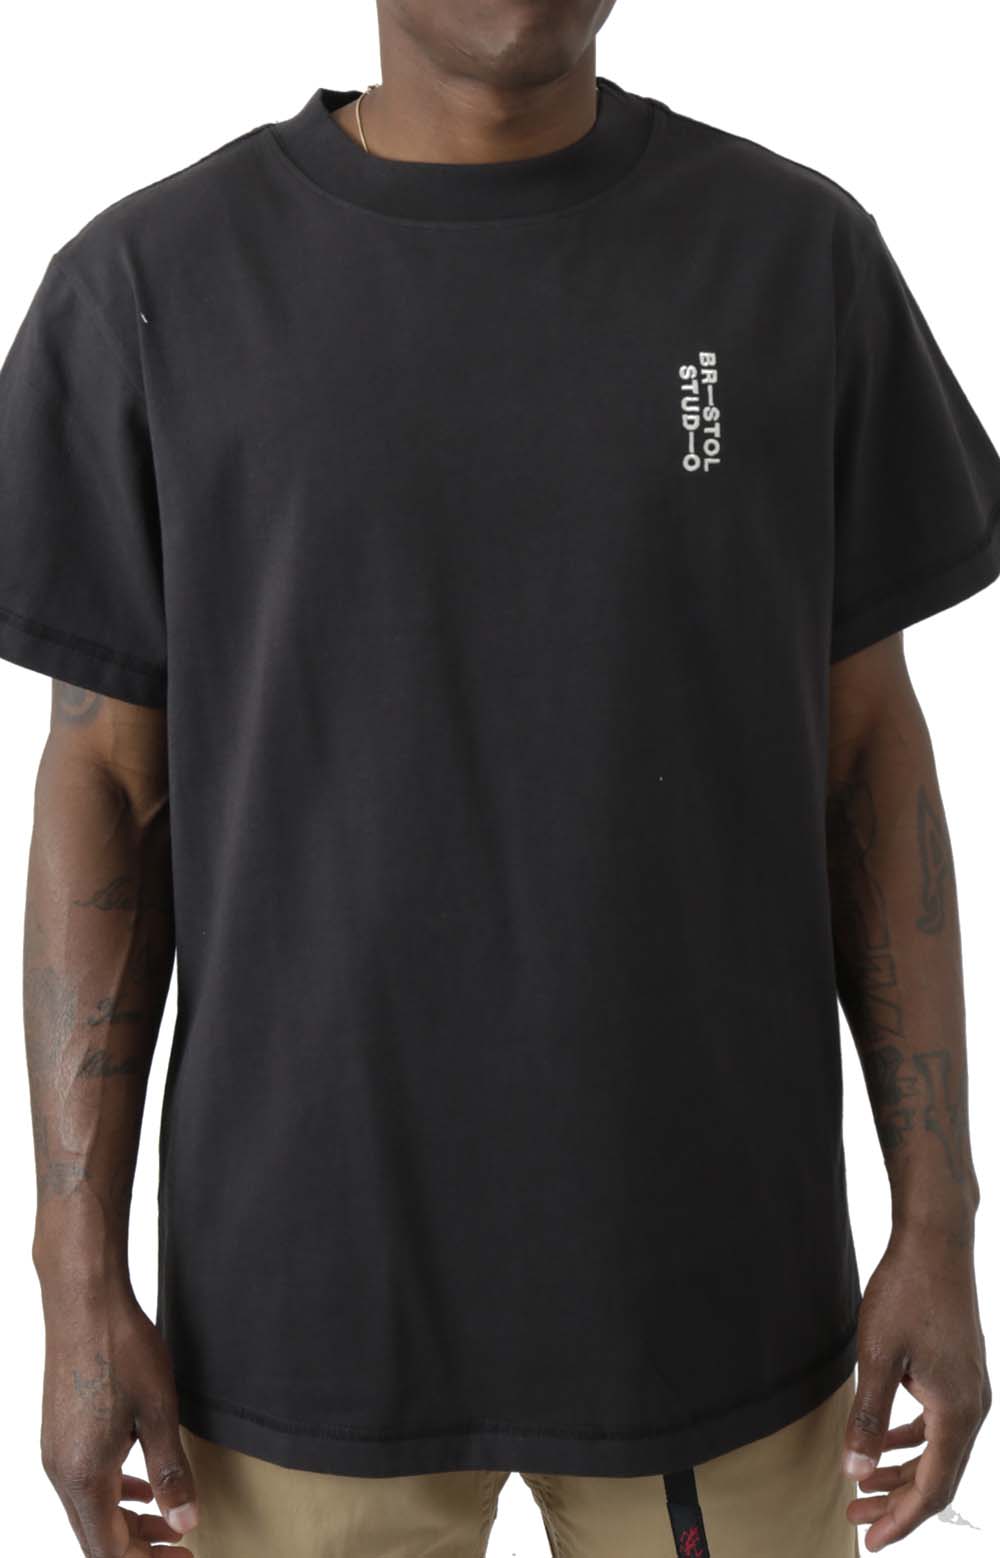 Signature Team T-Shirt - Black